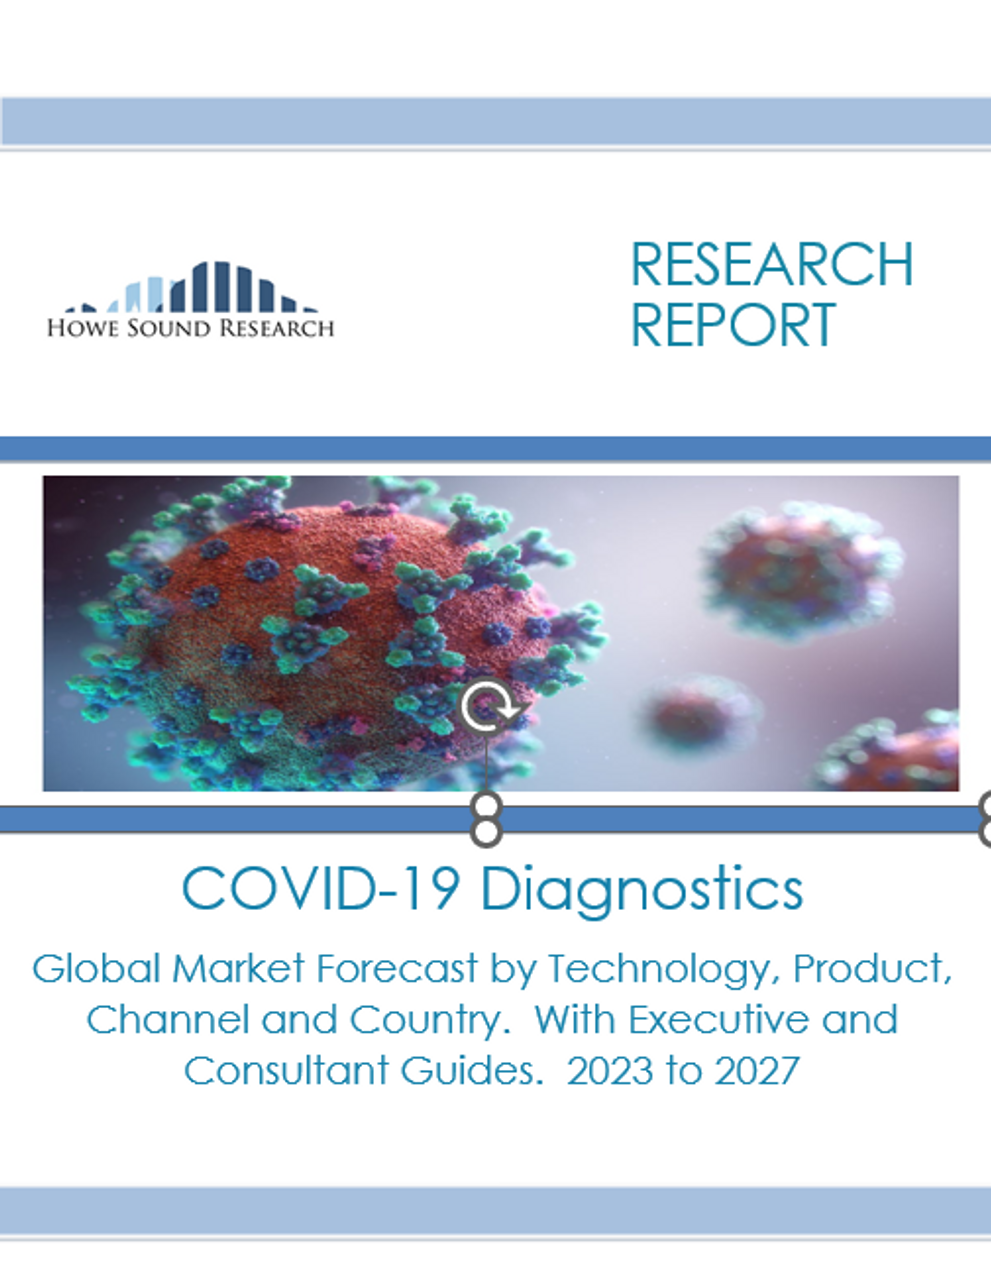 COVID-19 Diagnostics Markets 2023 to 2027